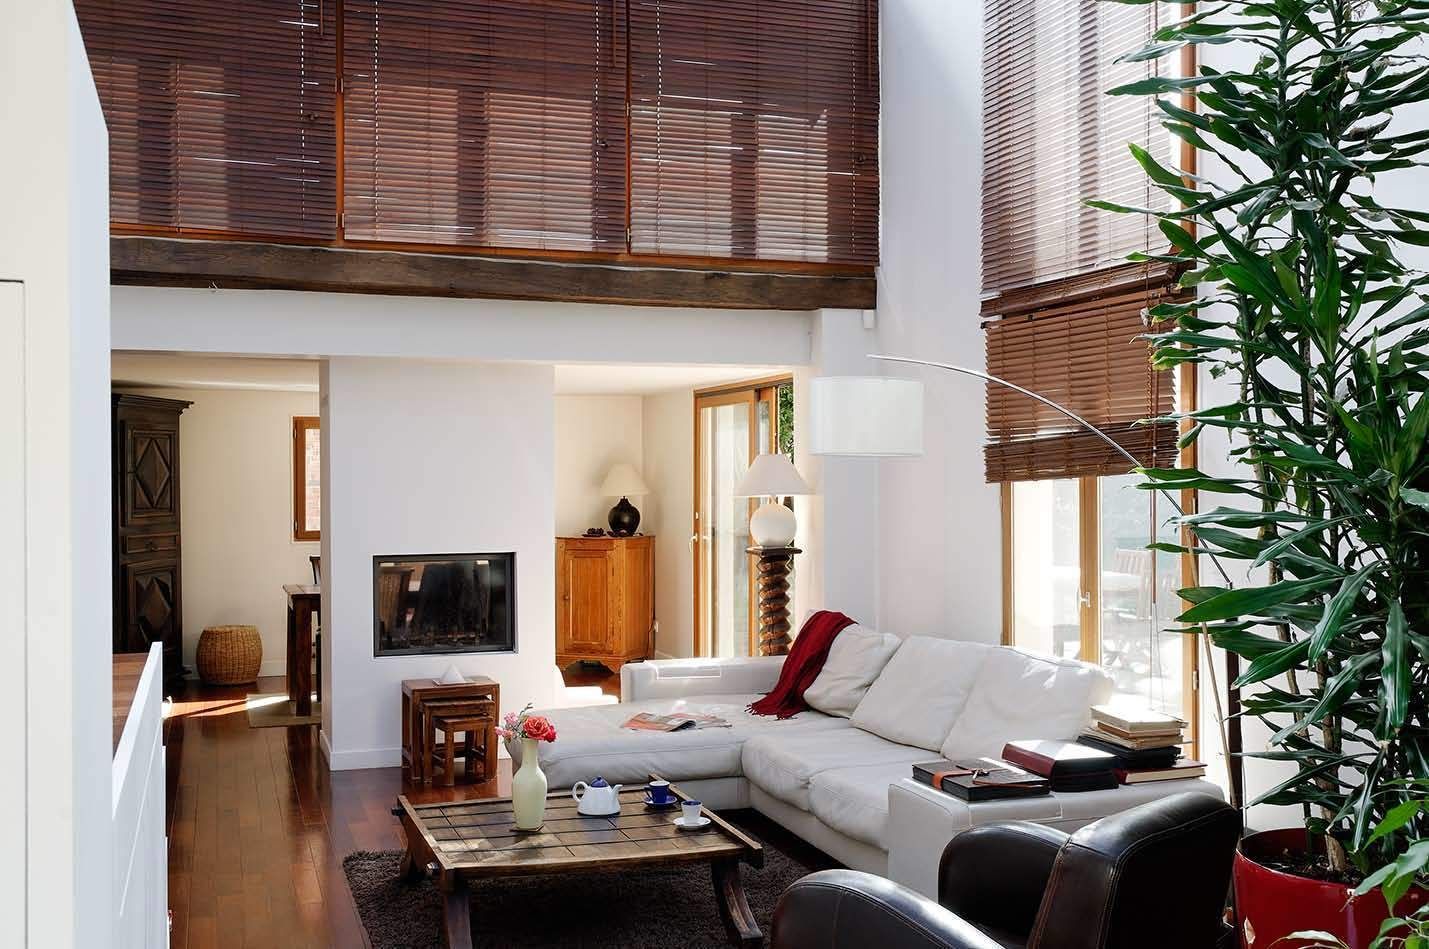 Réfection complète d’une maison à Colombes + extension, 170m² , ATELIER FB ATELIER FB Salon moderne